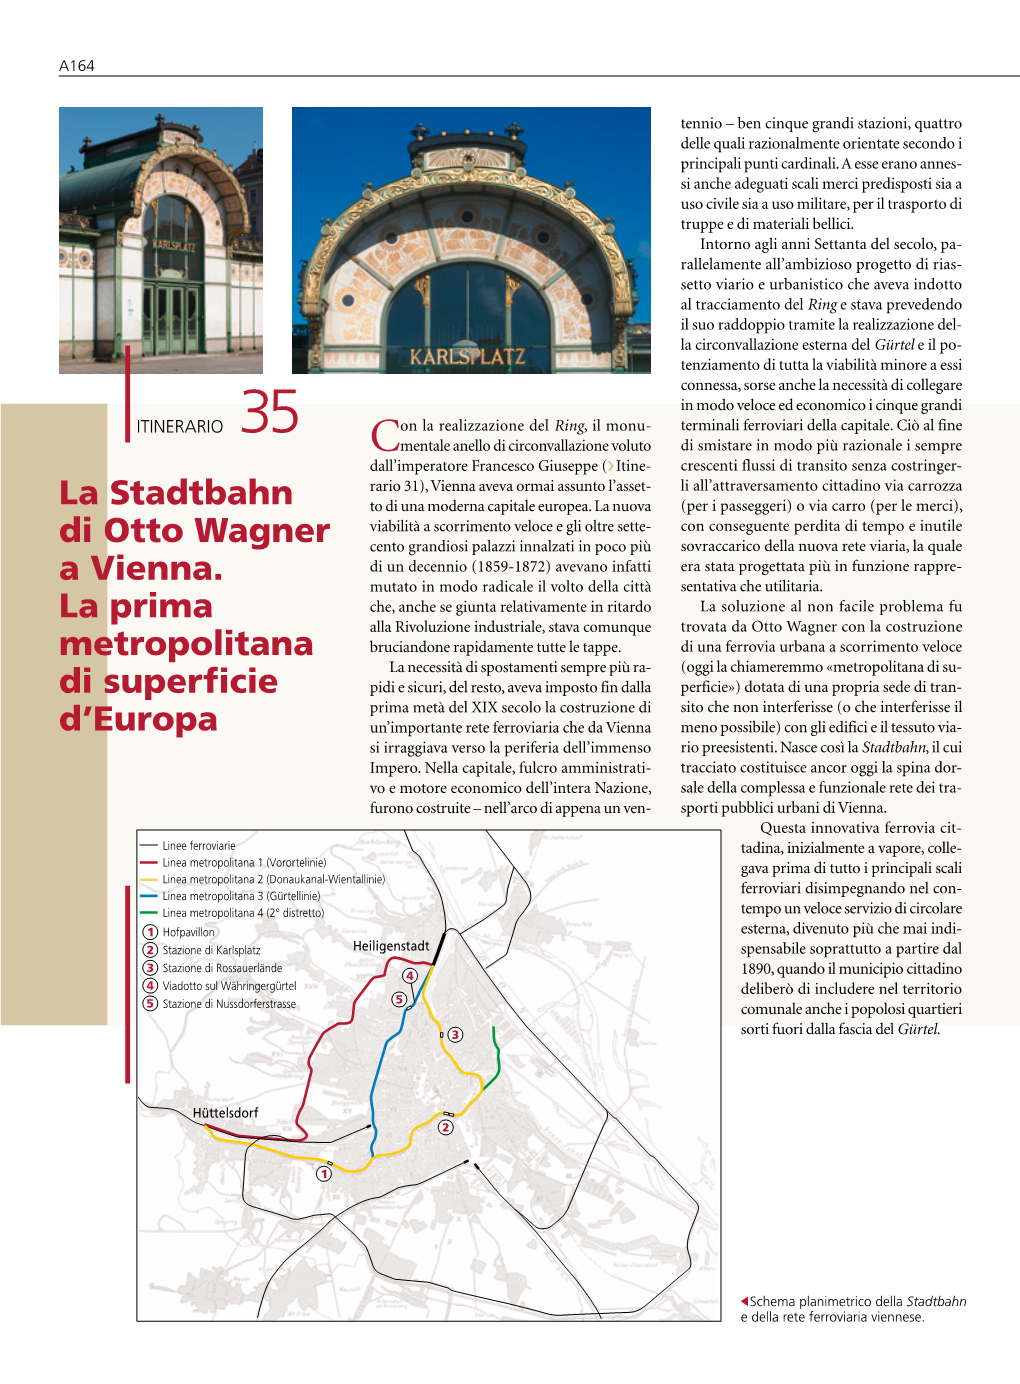 La Stadtbahn Di Otto Wagner a Vienna. La Prima Metropolitana Di